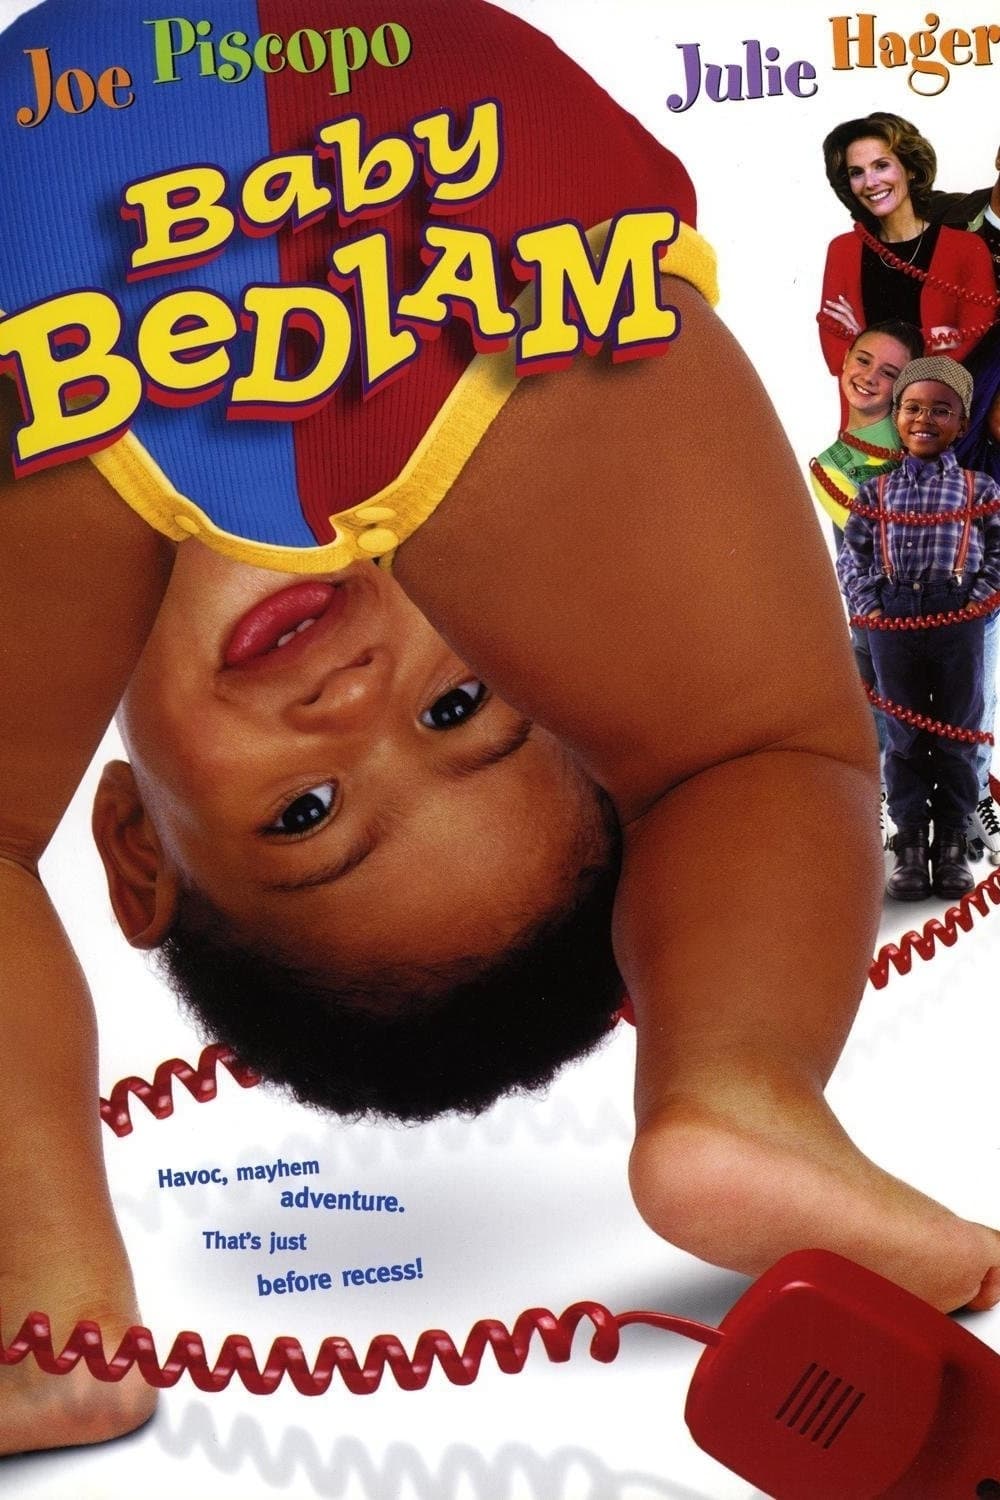 Baby Bedlam (2000)